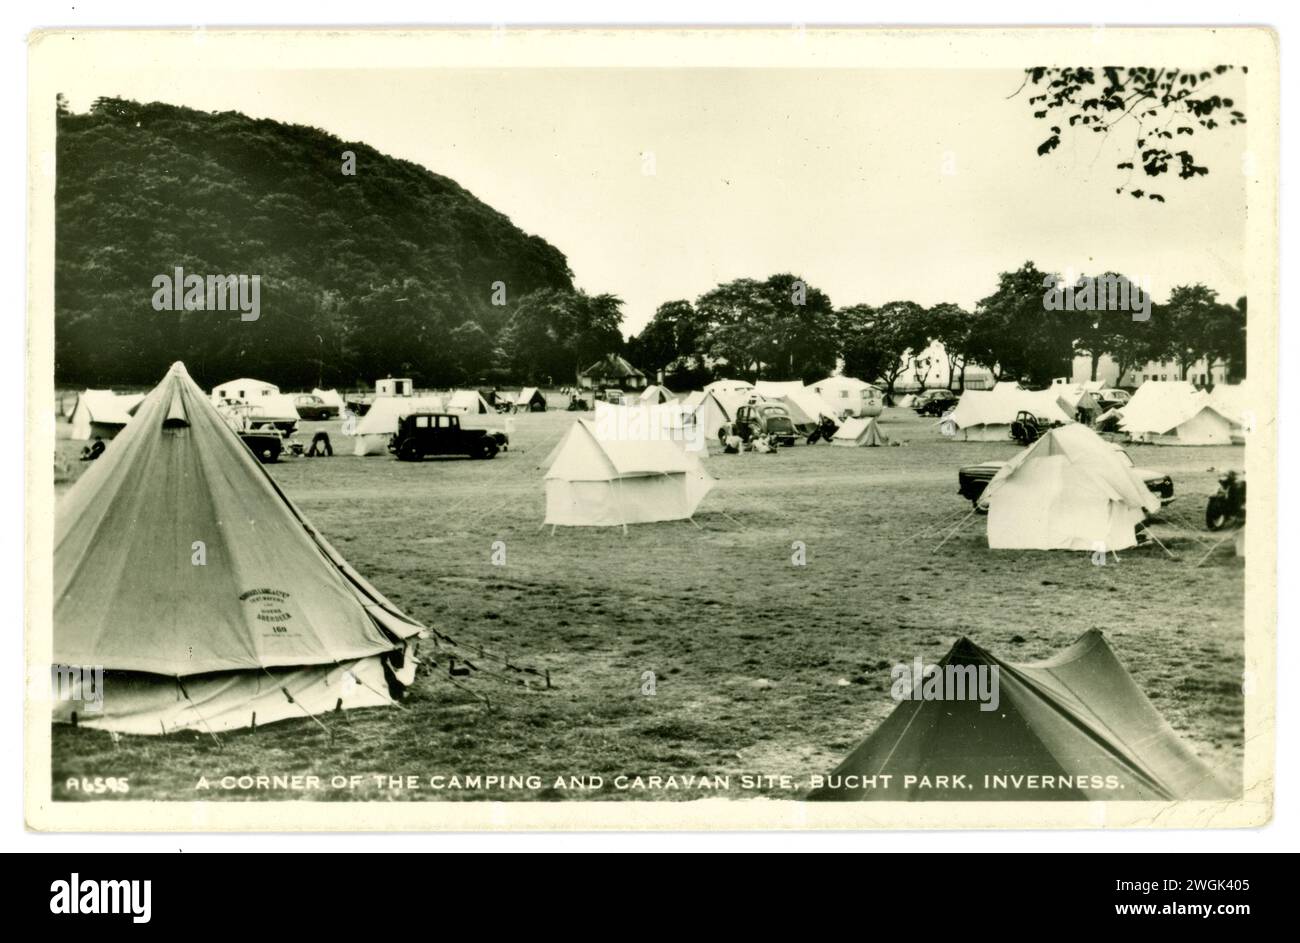 Original-Postkarte eines schottischen Campingplatzes aus den 1950er oder frühen 1960er Jahren - Camping- und Wohnwagenplatz, viele Zeltflächen und Leinwandzelte, alte Fahrzeuge, Glockenzelte, im Bught Park, Inverness, Schottland, Großbritannien Stockfoto